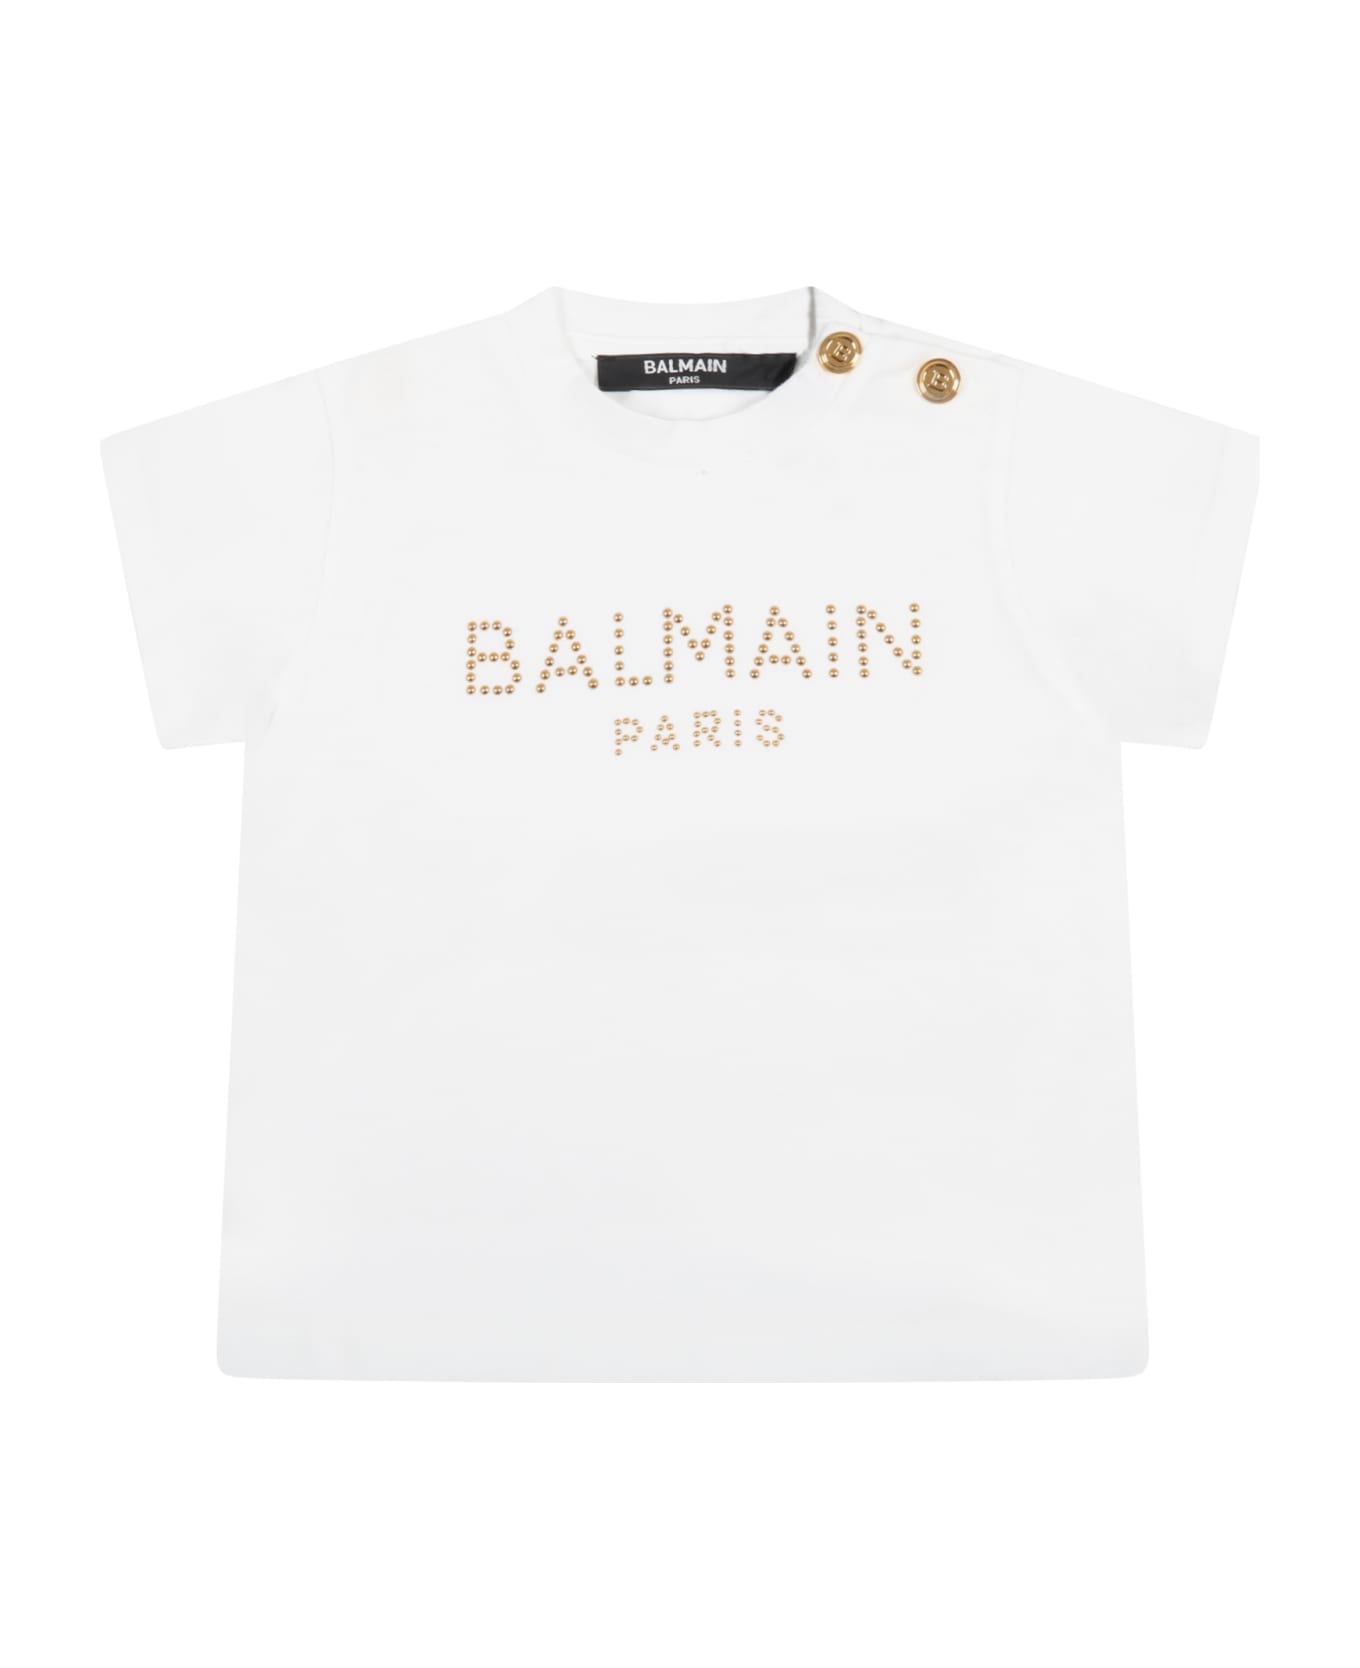 Balmain White T-shirt For Baby Girl With Golden Logo - White